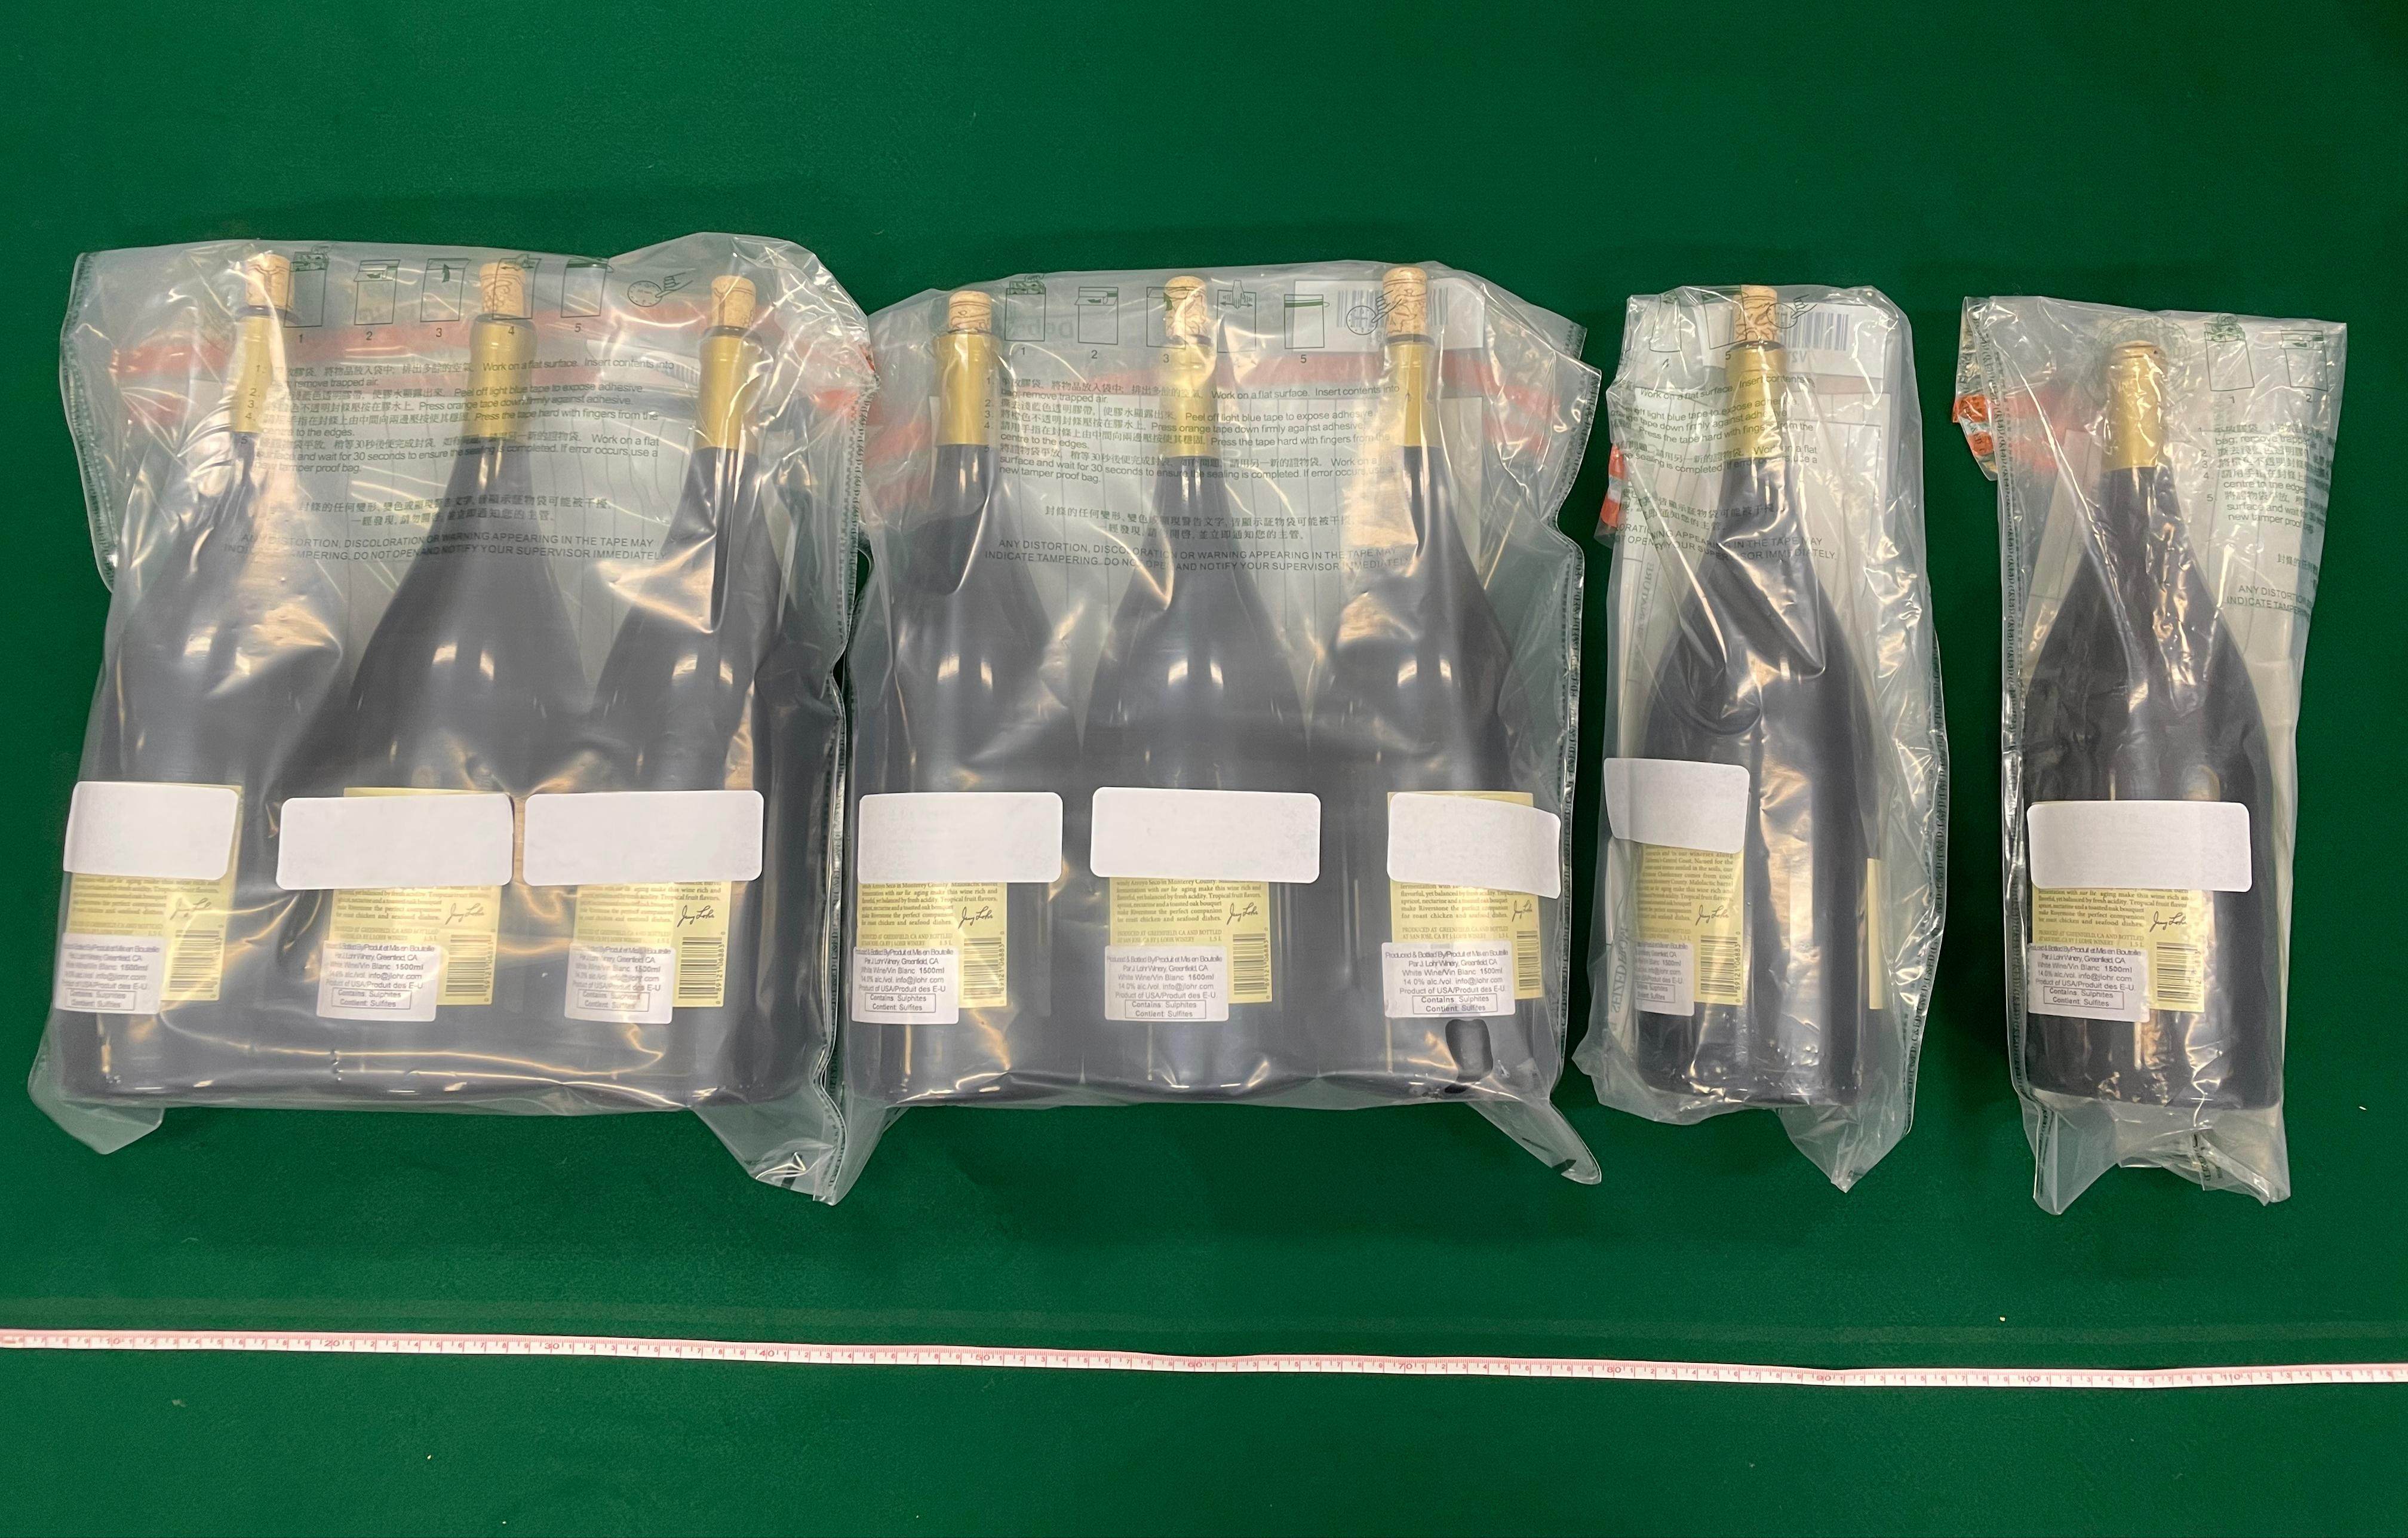 Customs seizes liquid cocaine worth HK$12 million. Photo: Handout